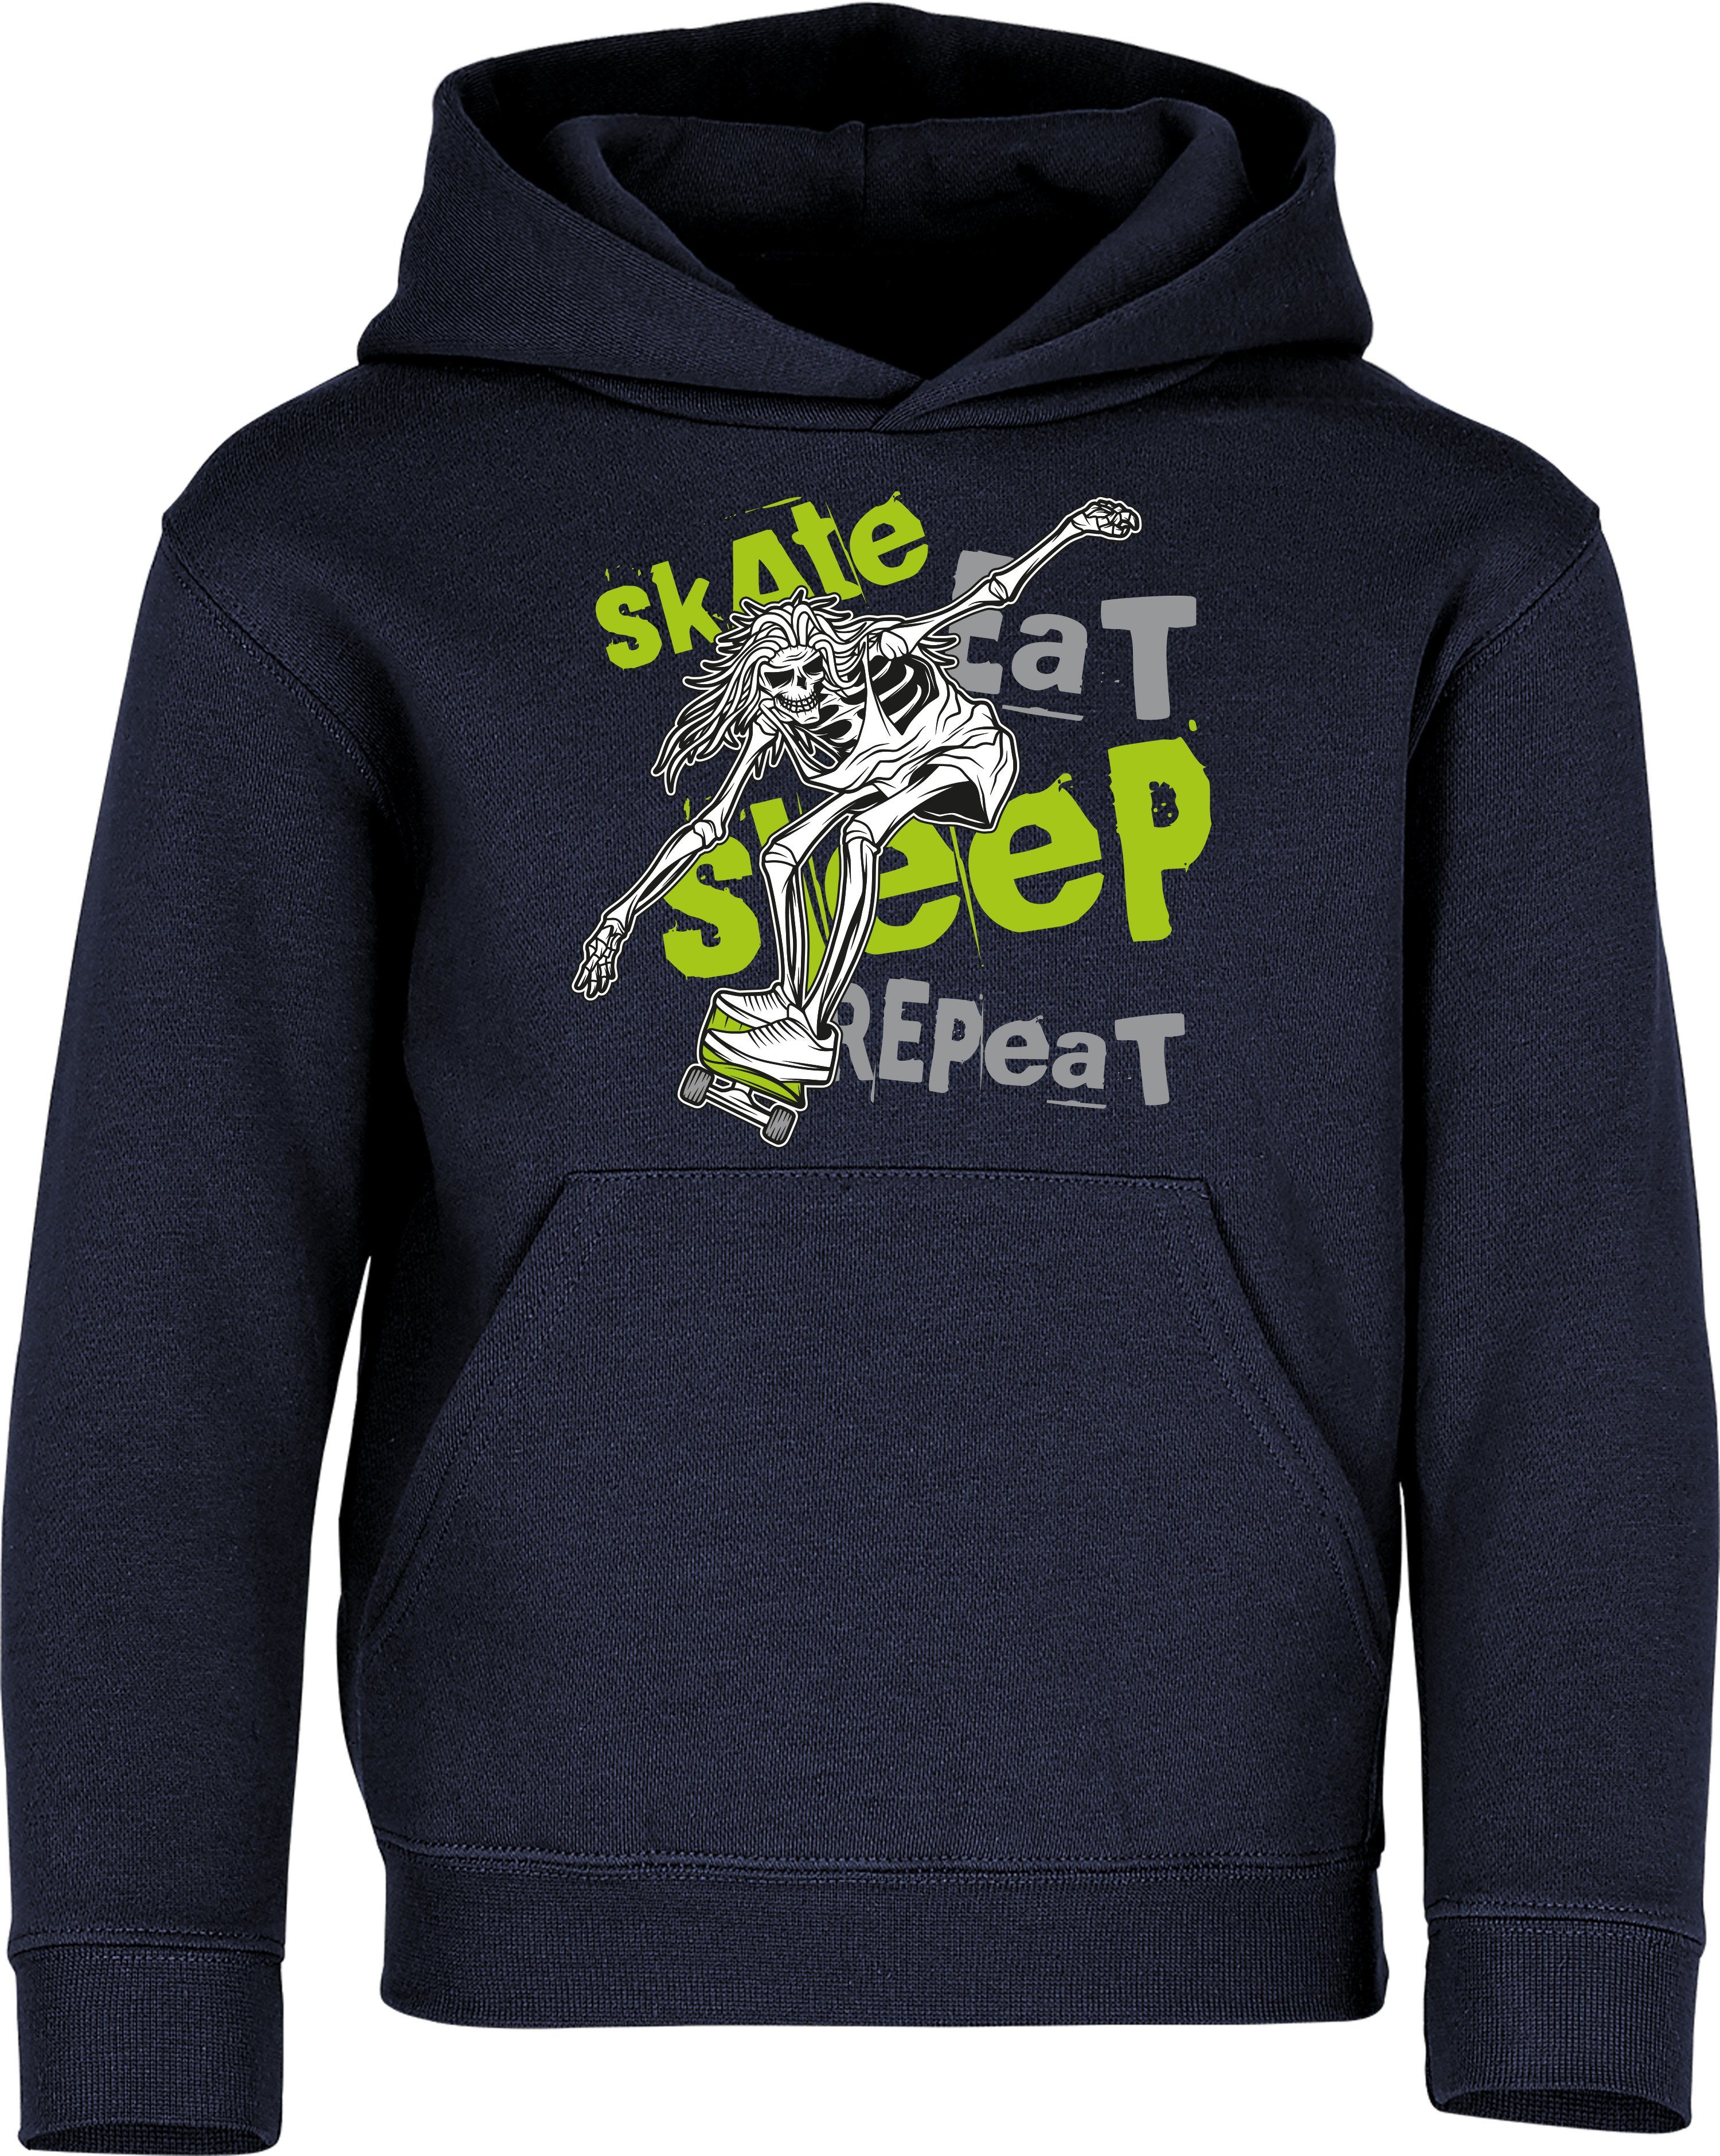 Sleep Skateboard hochwertiger Kinder Eat Pulli : Siebdruck Baddery Skaten - Navy Skate Repeat Hoodie Kapuzenpullover